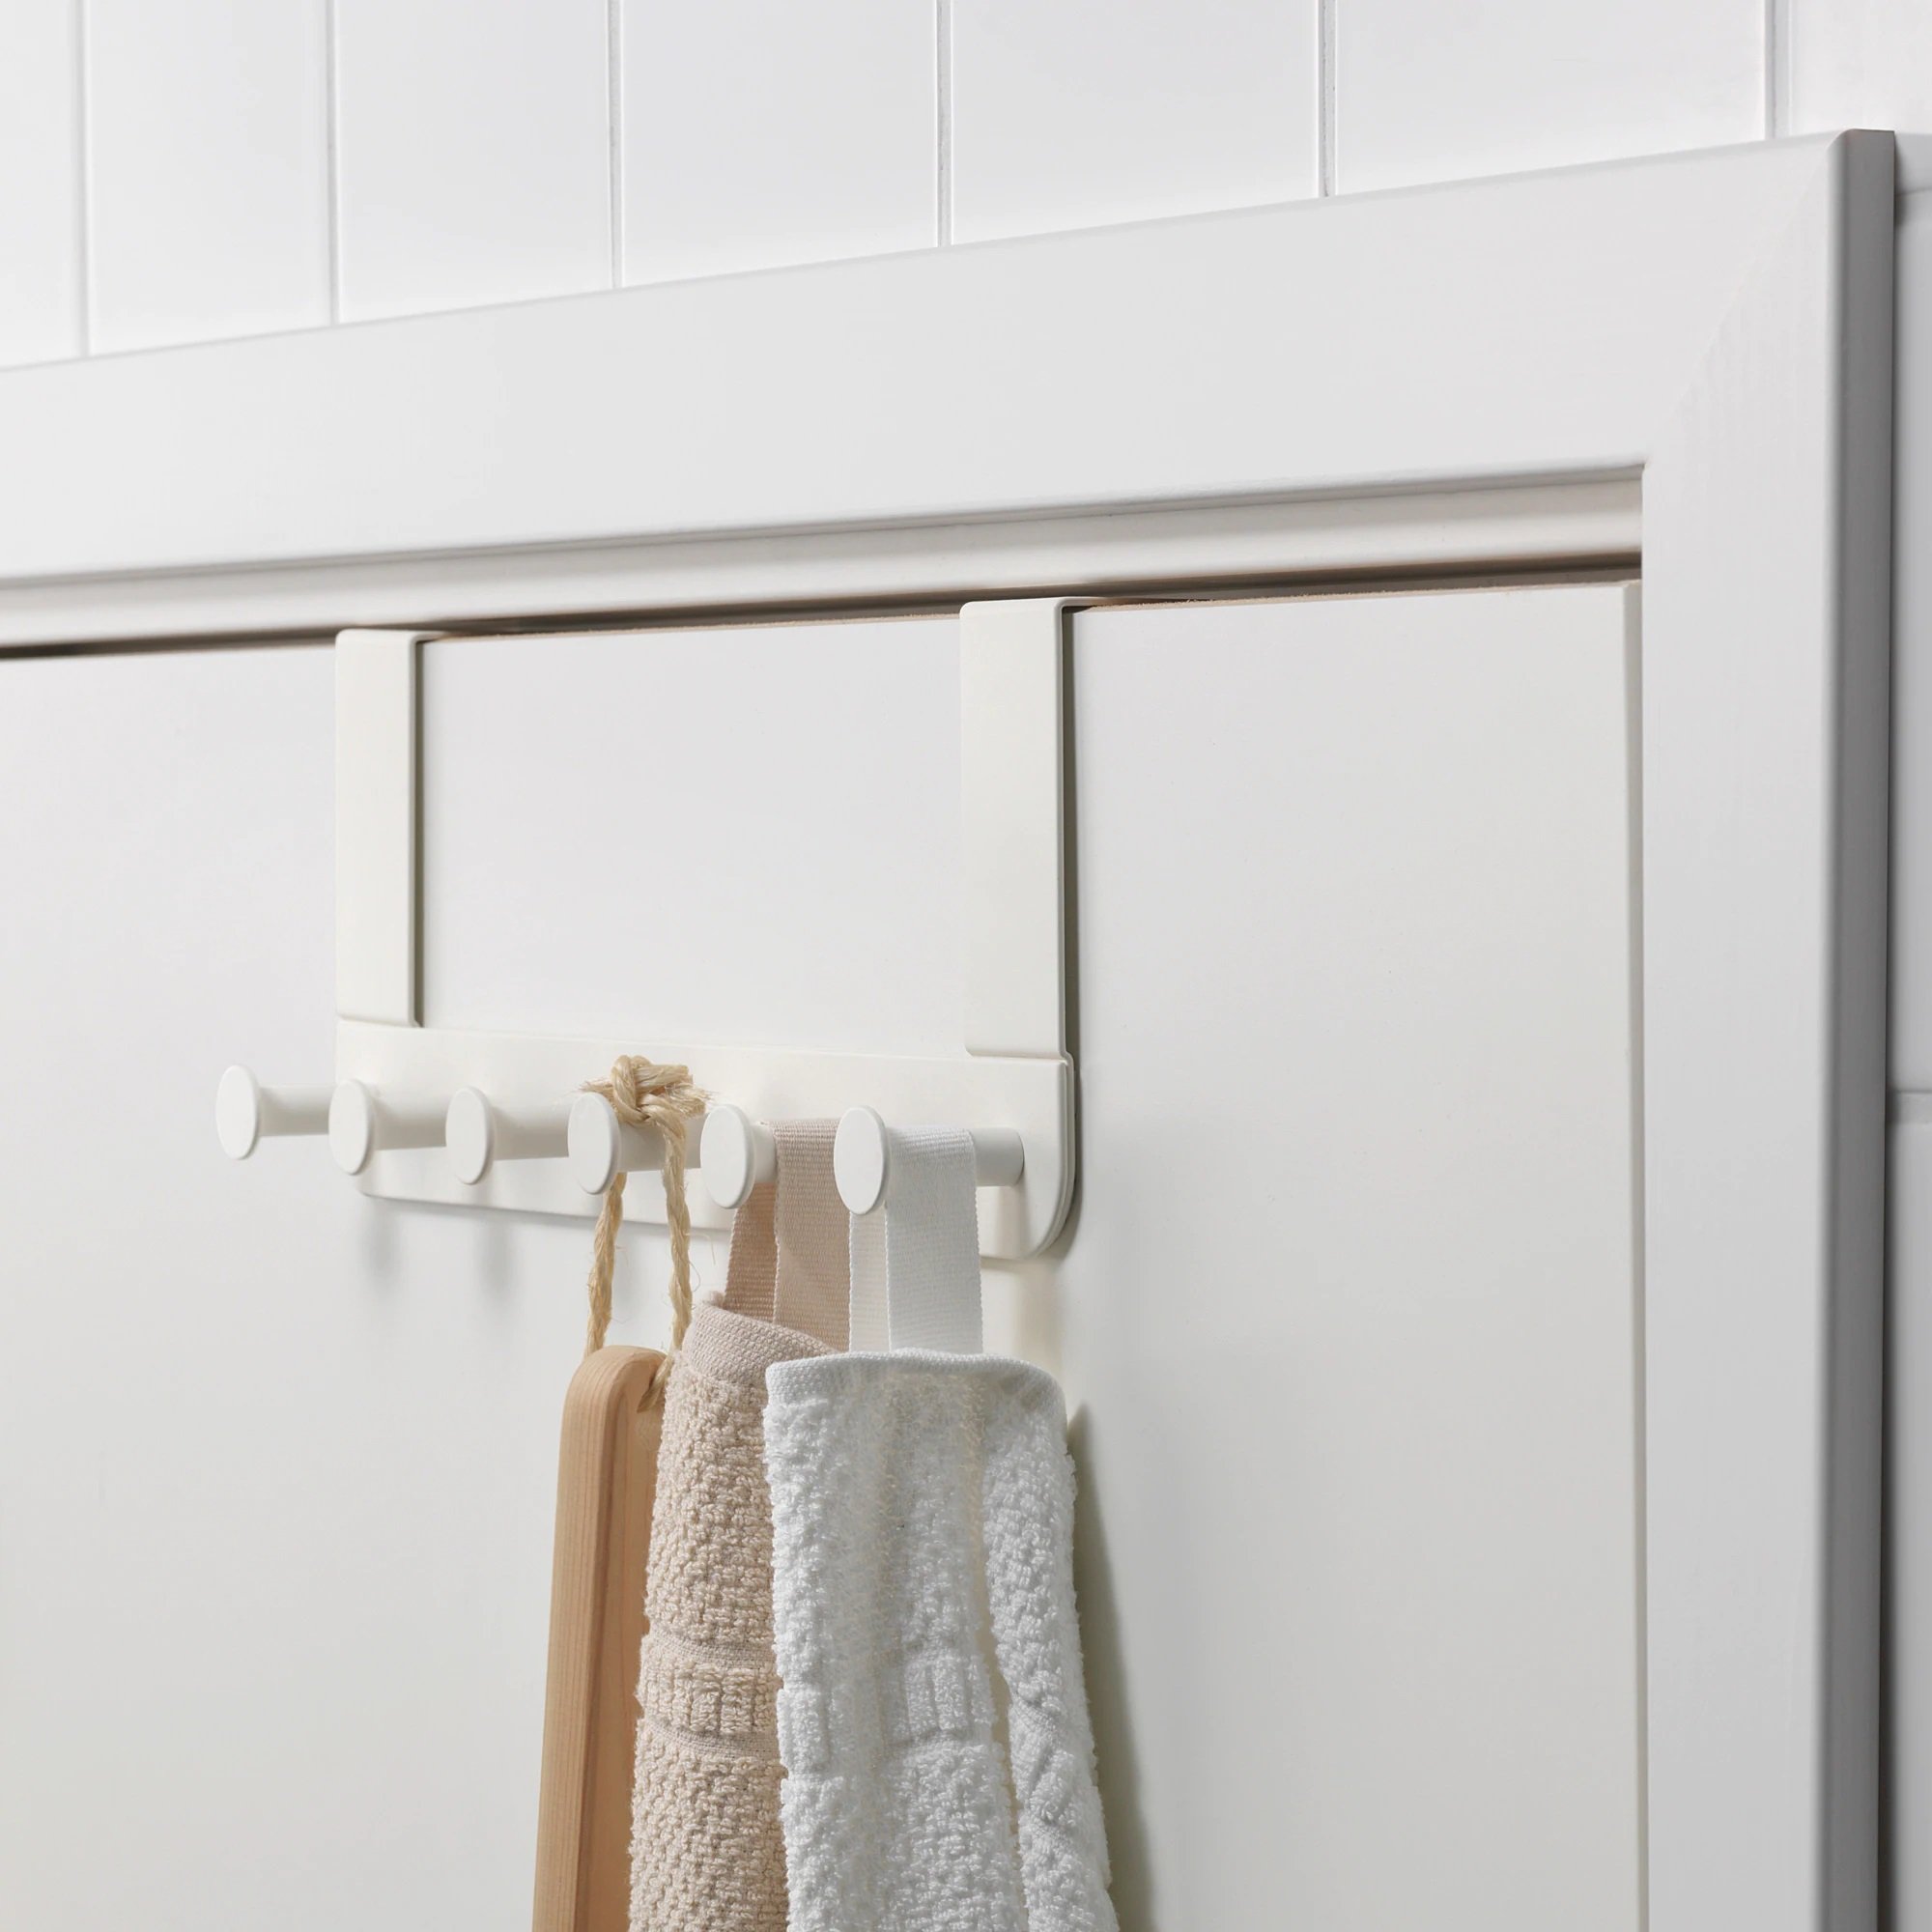 La solución de Ikea para aprovechar al máximo el espacio de los baños pequeños